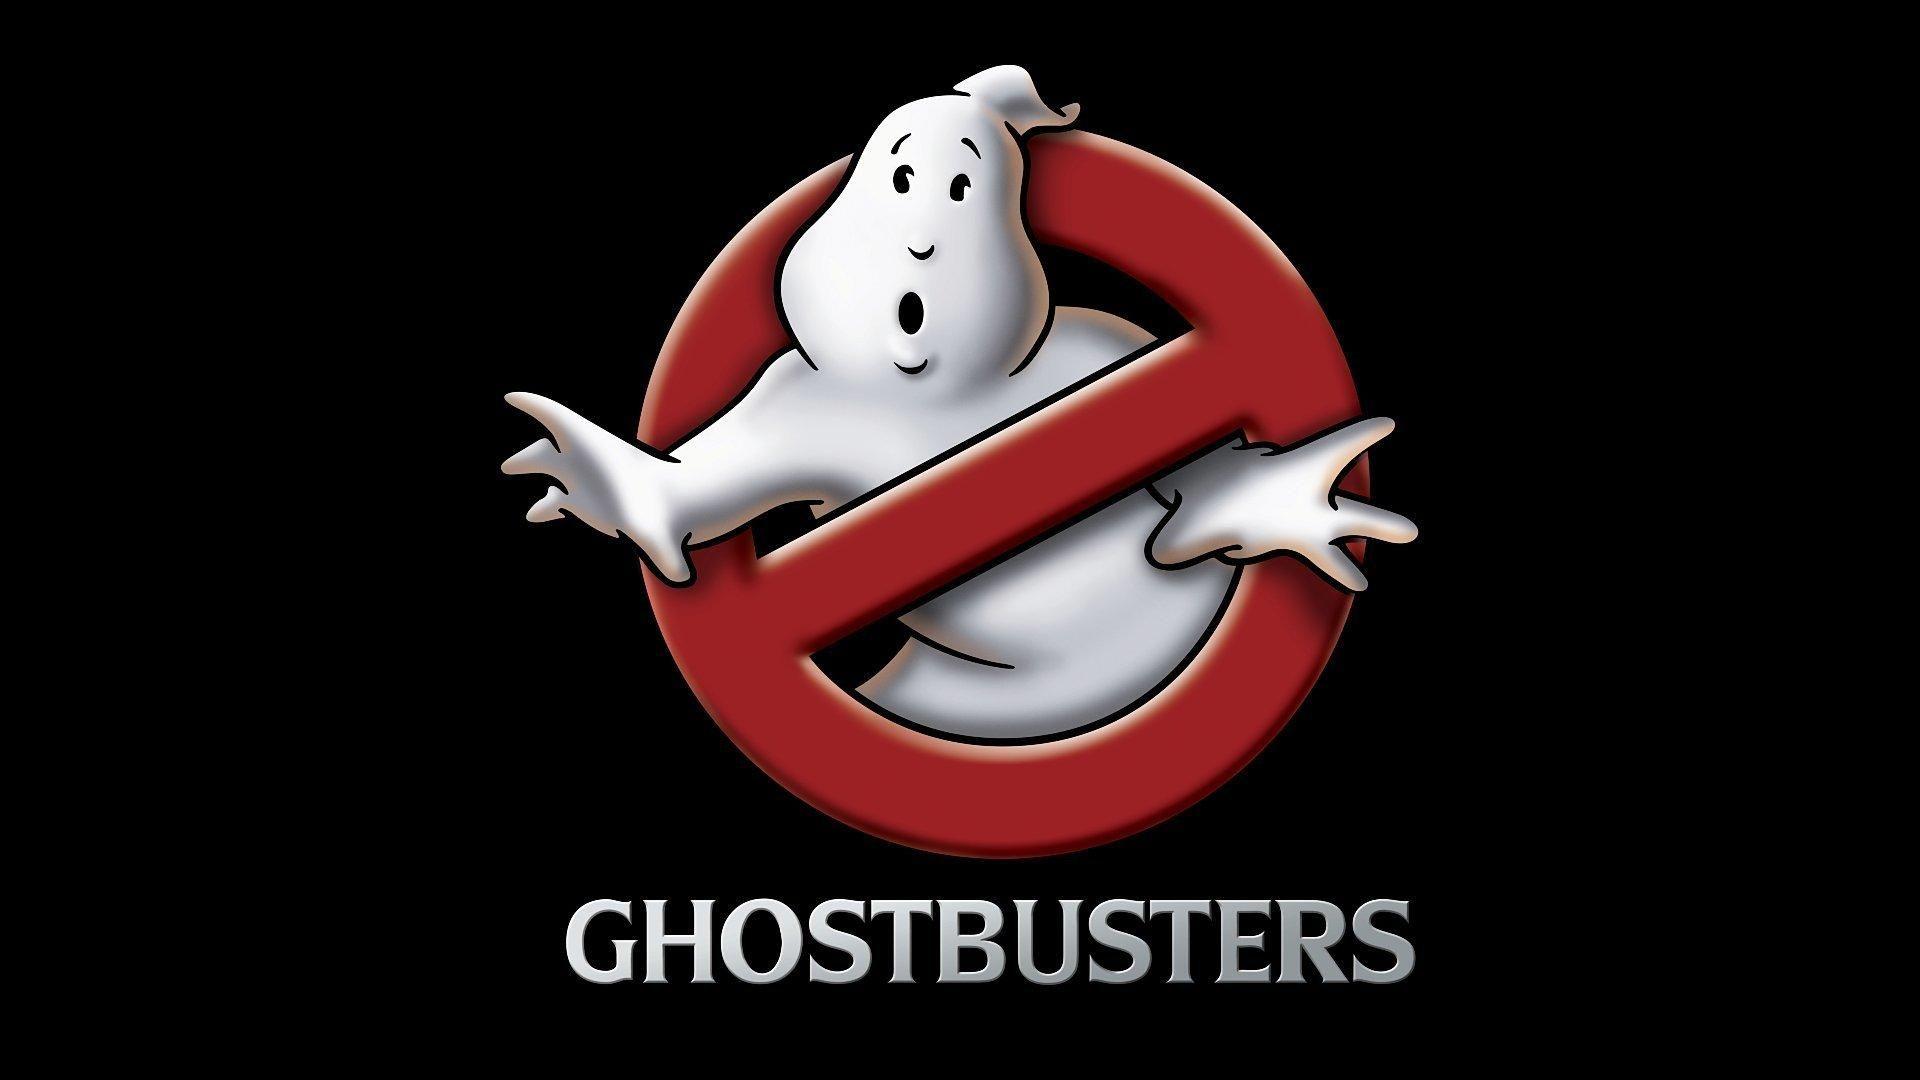 Ghostbusters logo HD desktop wallpaper, Widescreen, High